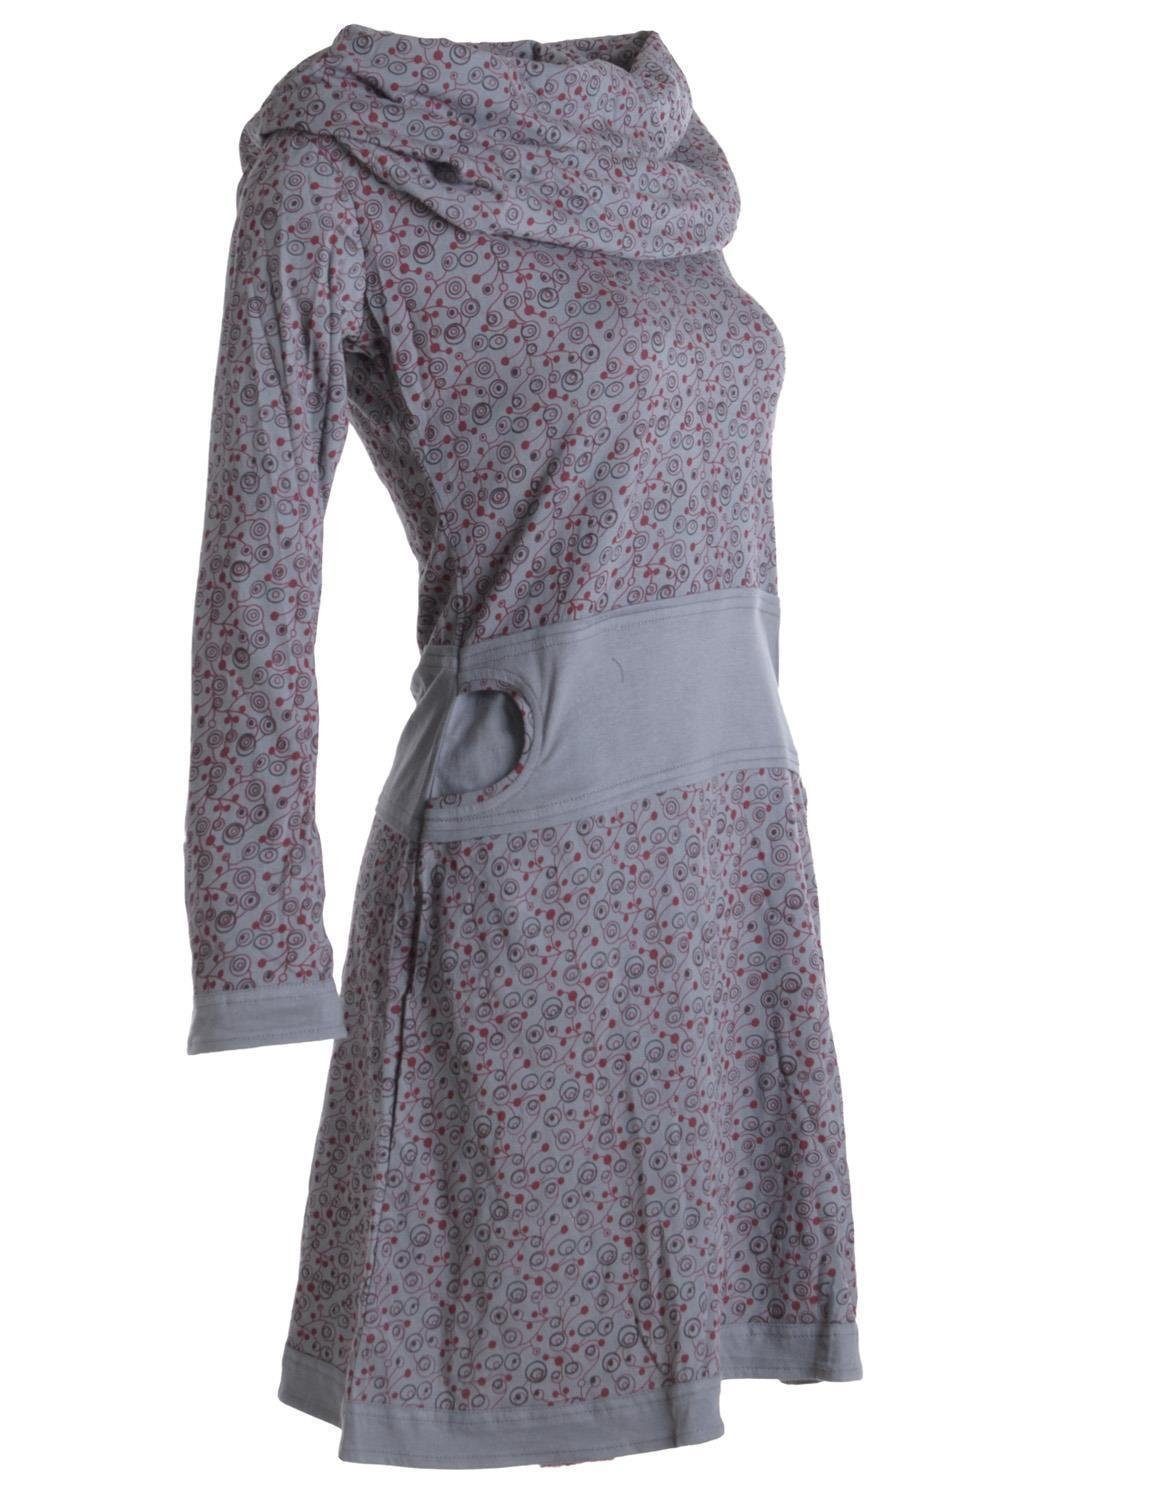 Baumwolle Kleid Hippie Bedrucktes mit grau Style Boho, Vishes Schalkragen Ethno, aus Jerseykleid Goa,